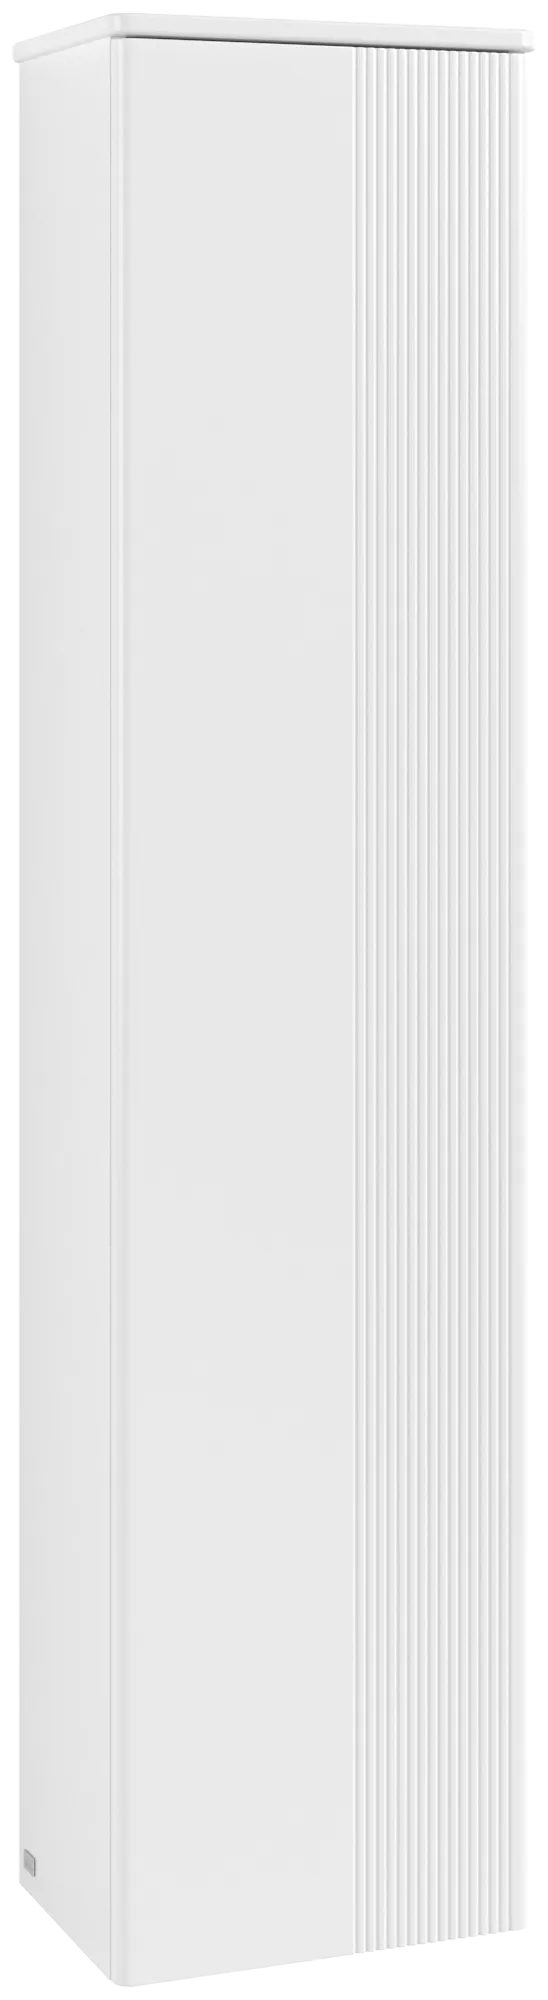 Bild von VILLEROY BOCH Antao Hochschrank, 1 Tür, 414 x 1719 x 287 mm, Front mit Struktur, White Matt Lacquer / White Matt Lacquer #K45100MT